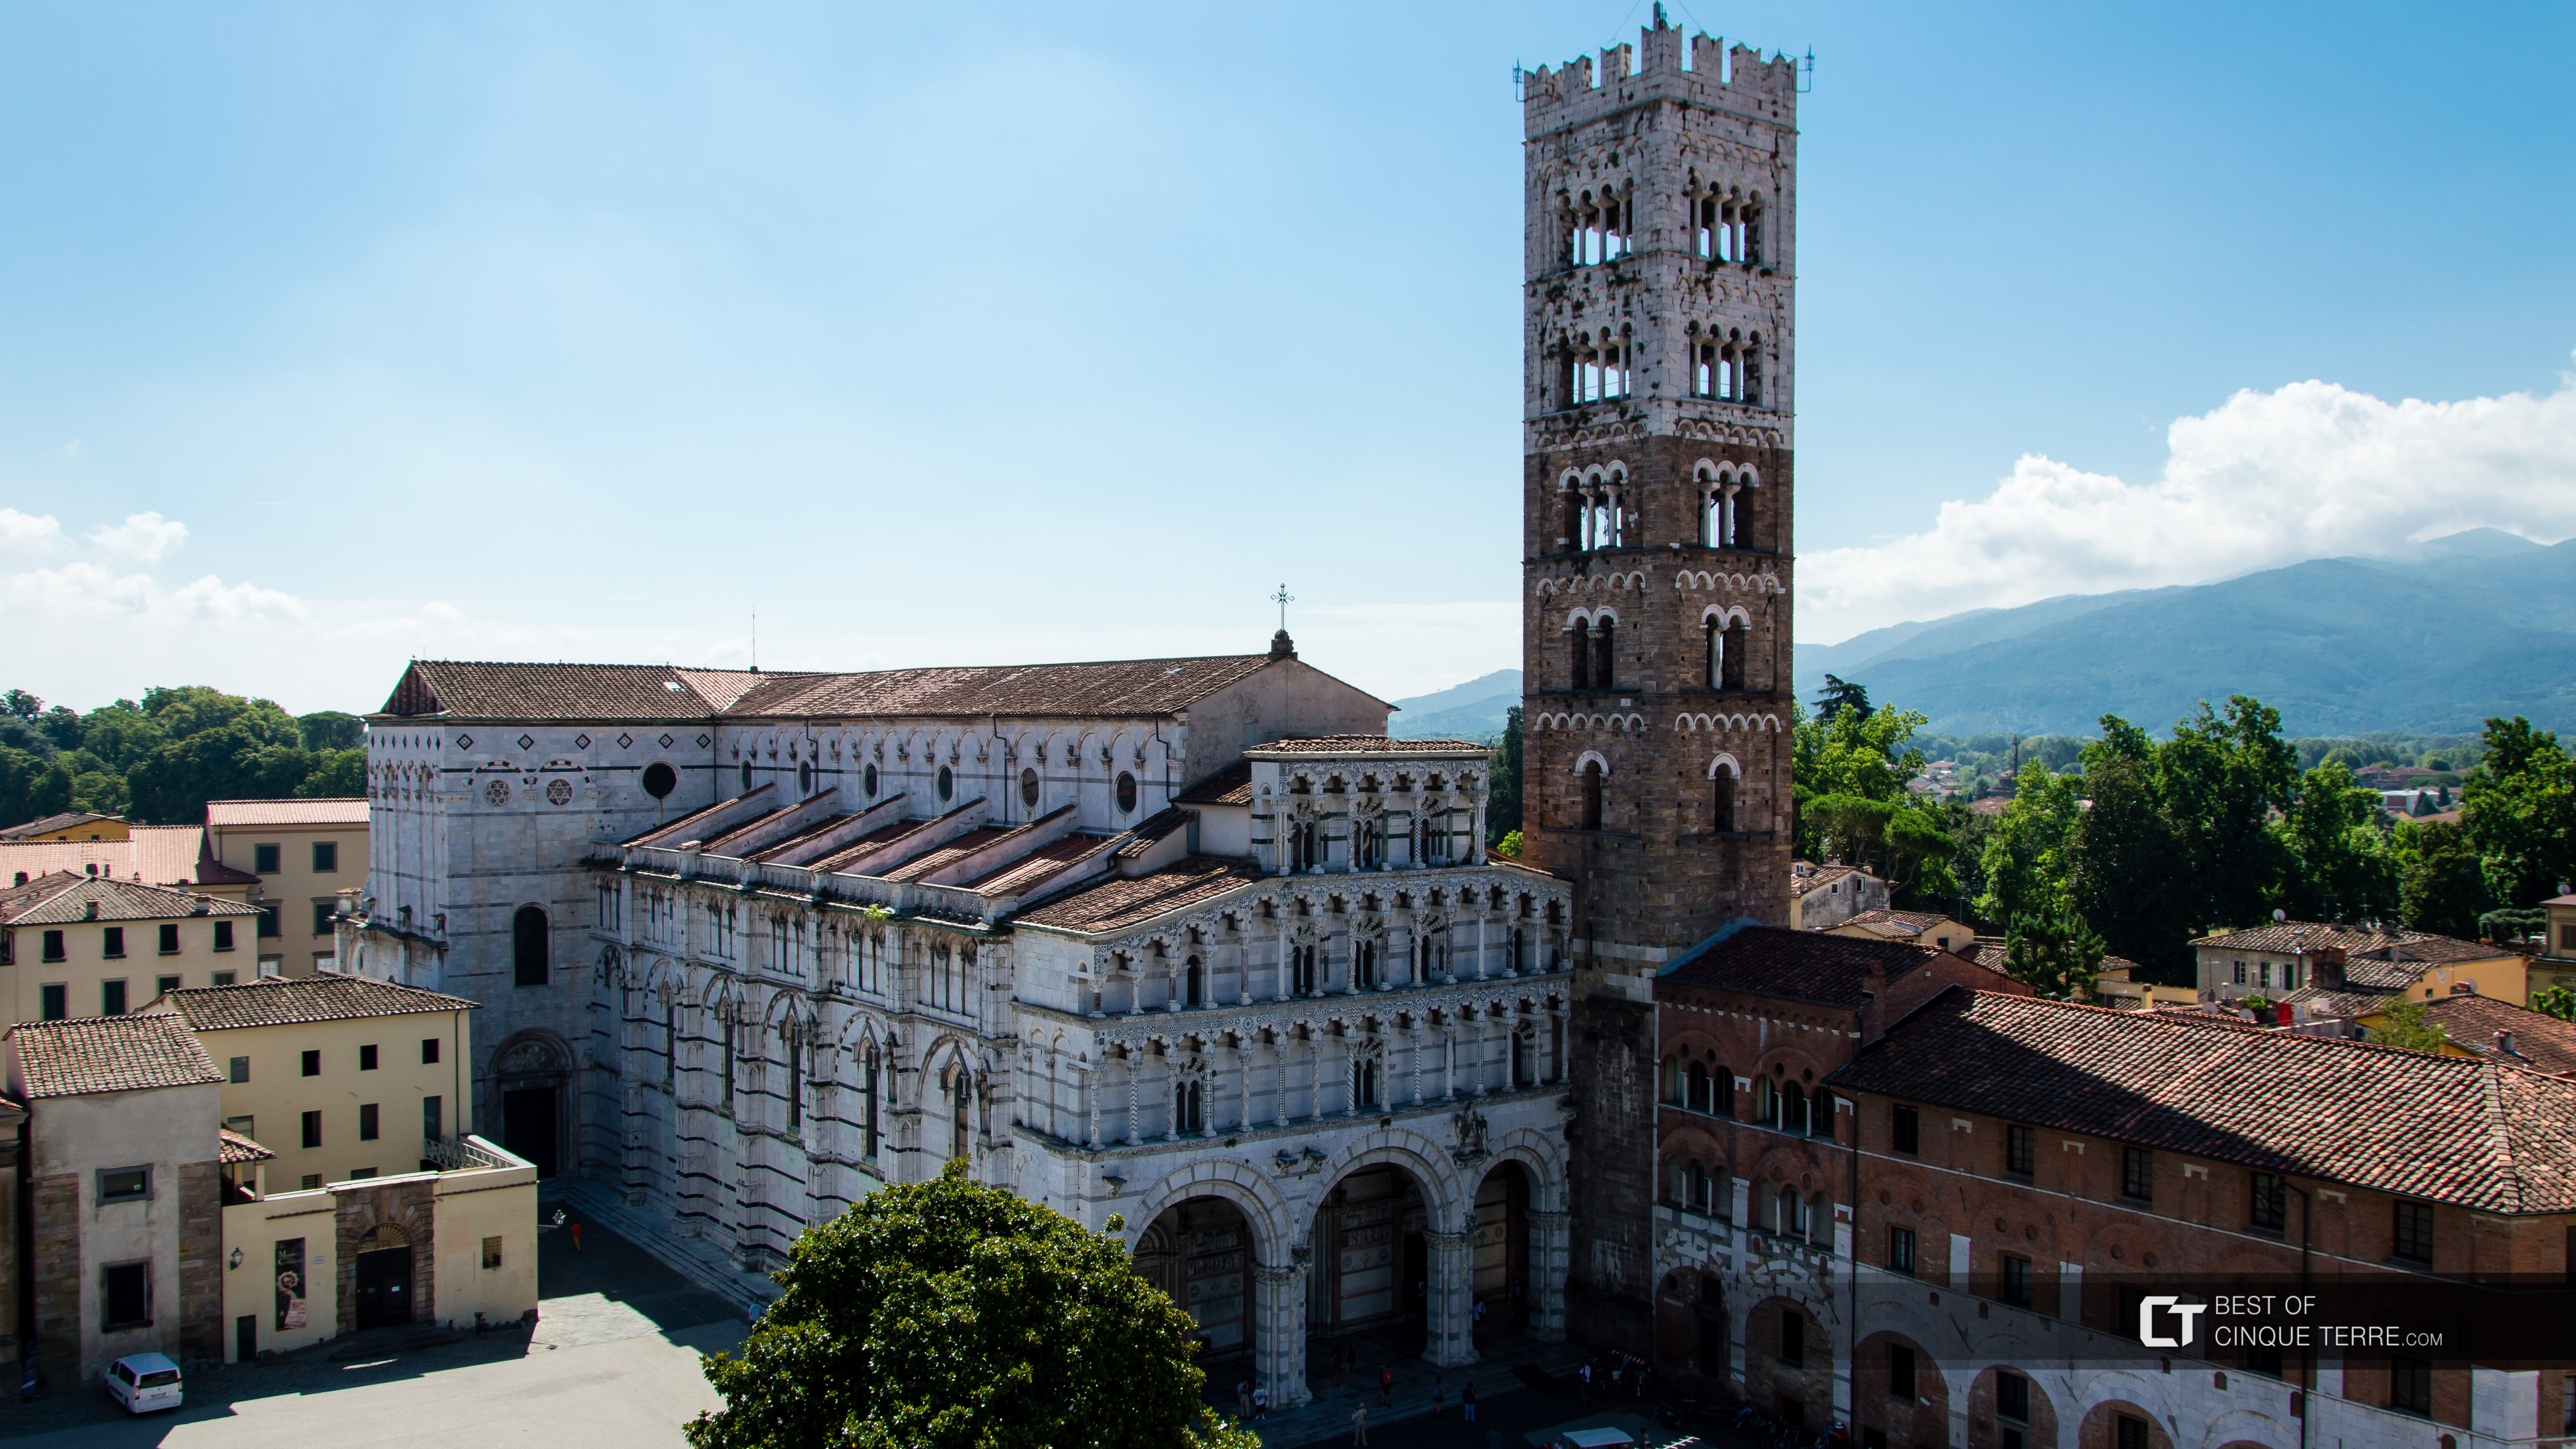 Vista do campanário de uma igreja para a Catedral de Lucca, Itália